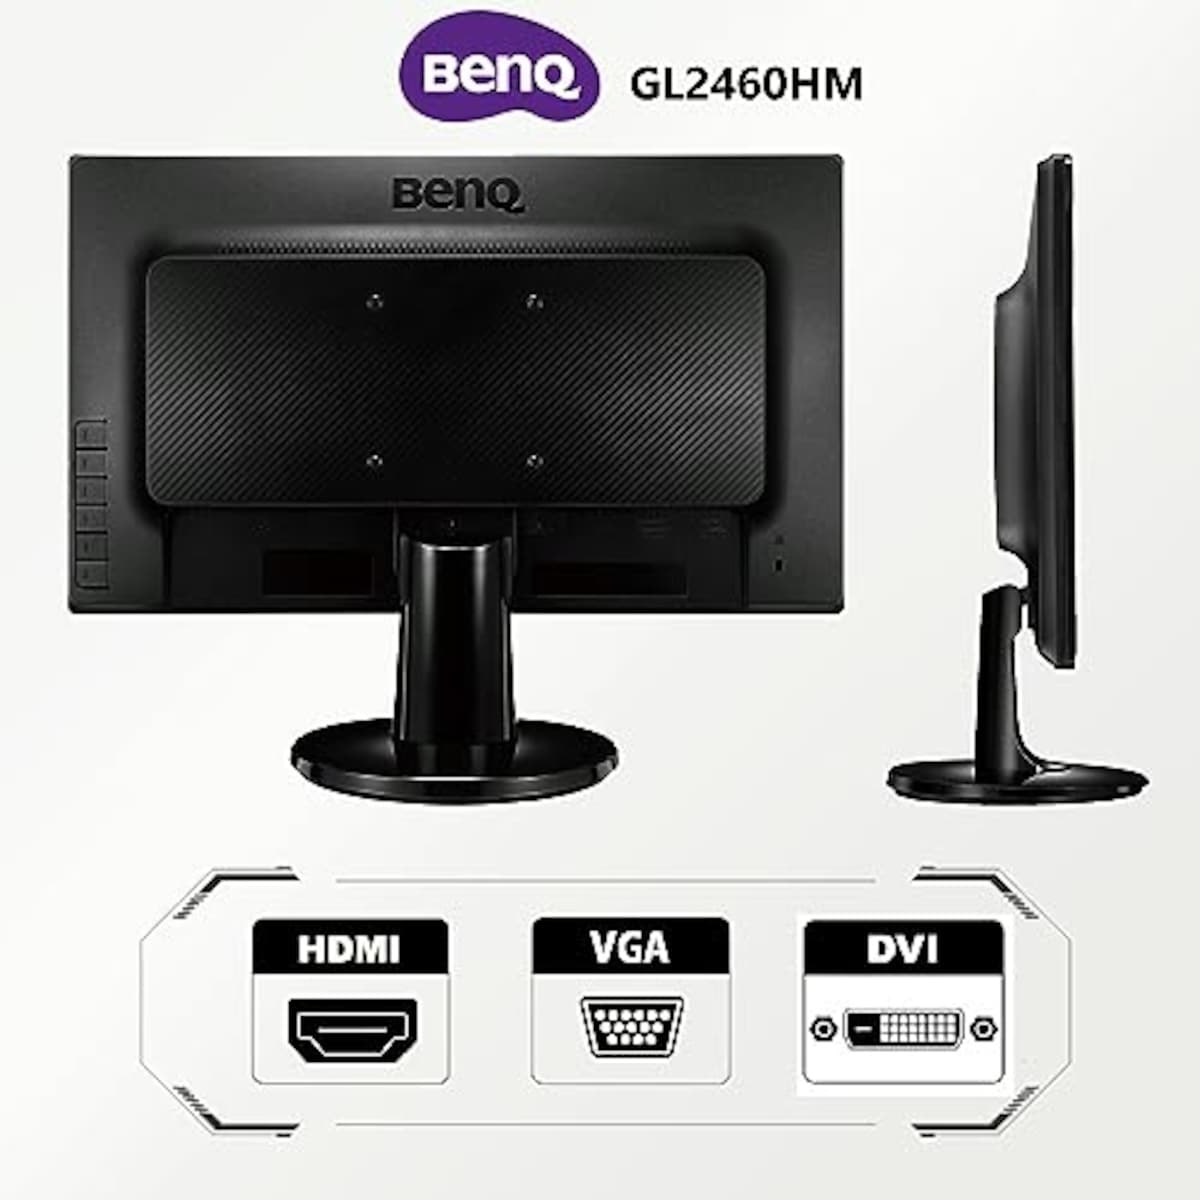  【整備済み品】BENQ モニター GL2460HM 24インチ FHD 1080p /フルHD/TN/HDMI,DVI,D-sub/ブルーライト軽減/フリッカフリー/VESA対応/スピーカー画像3 